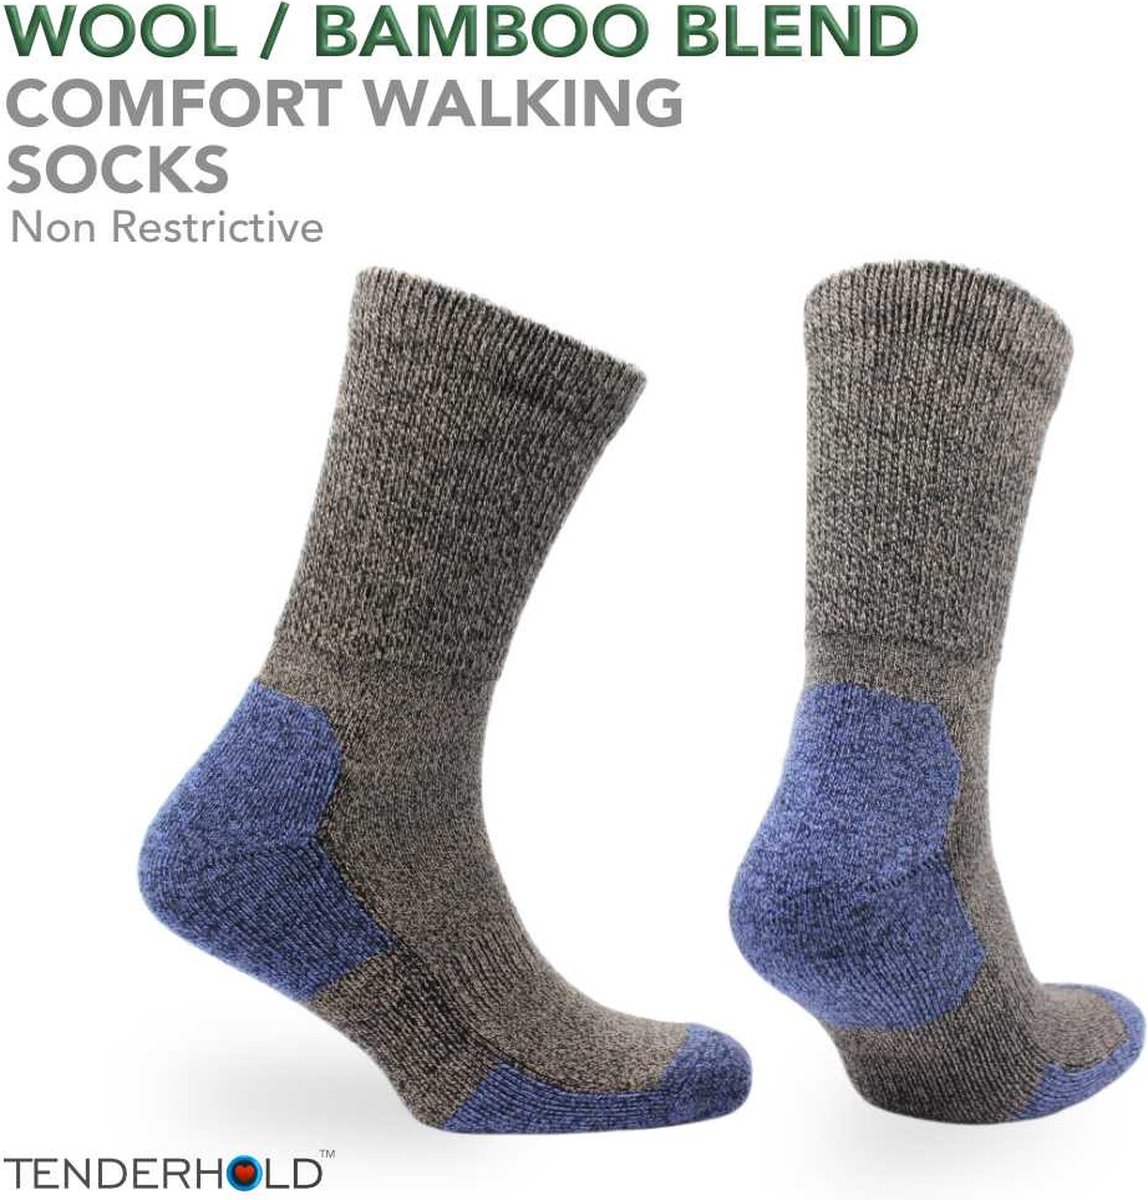 Norfolk Wandelsokken - Merino wol en Bamboe mix Tenderhold, Outdoor Zacht en Warme Sokken met Demping - Merino wollen sokken - Bruin - Maat 35-38 - Alfie